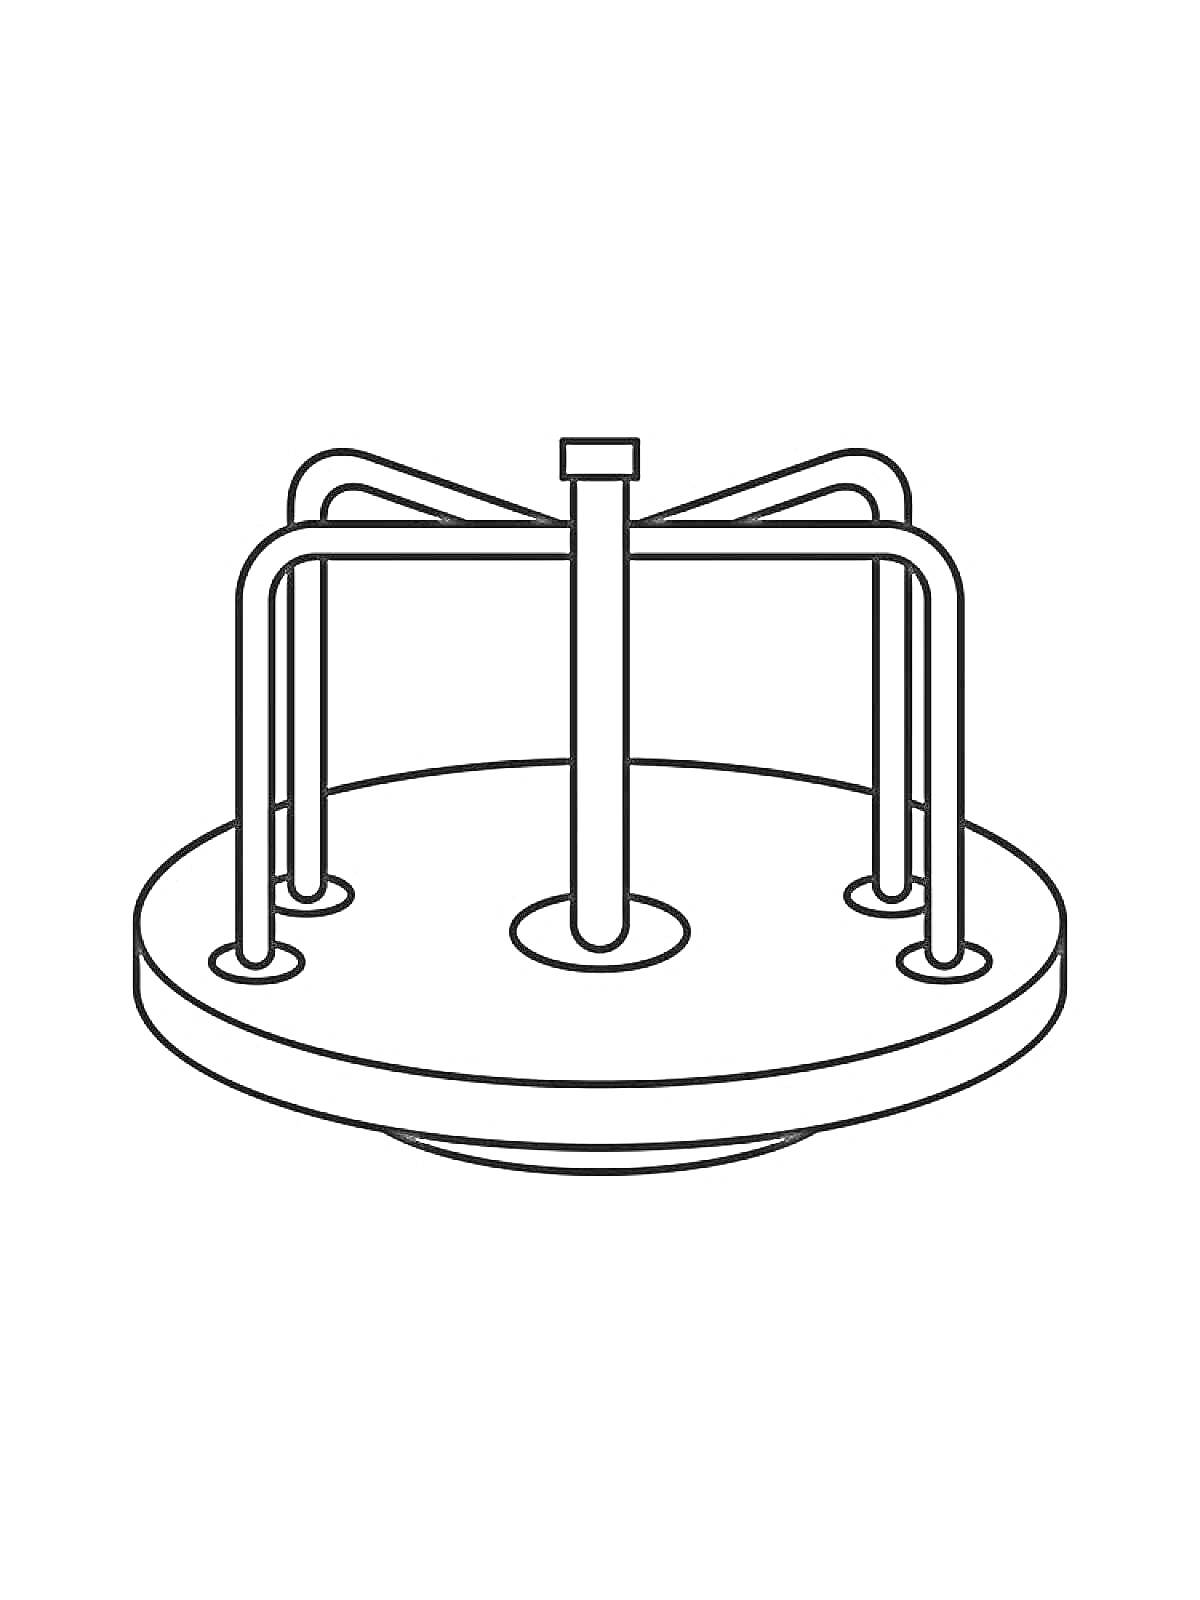 Раскраска Карусель с круглой платформой и четырьмя ручками